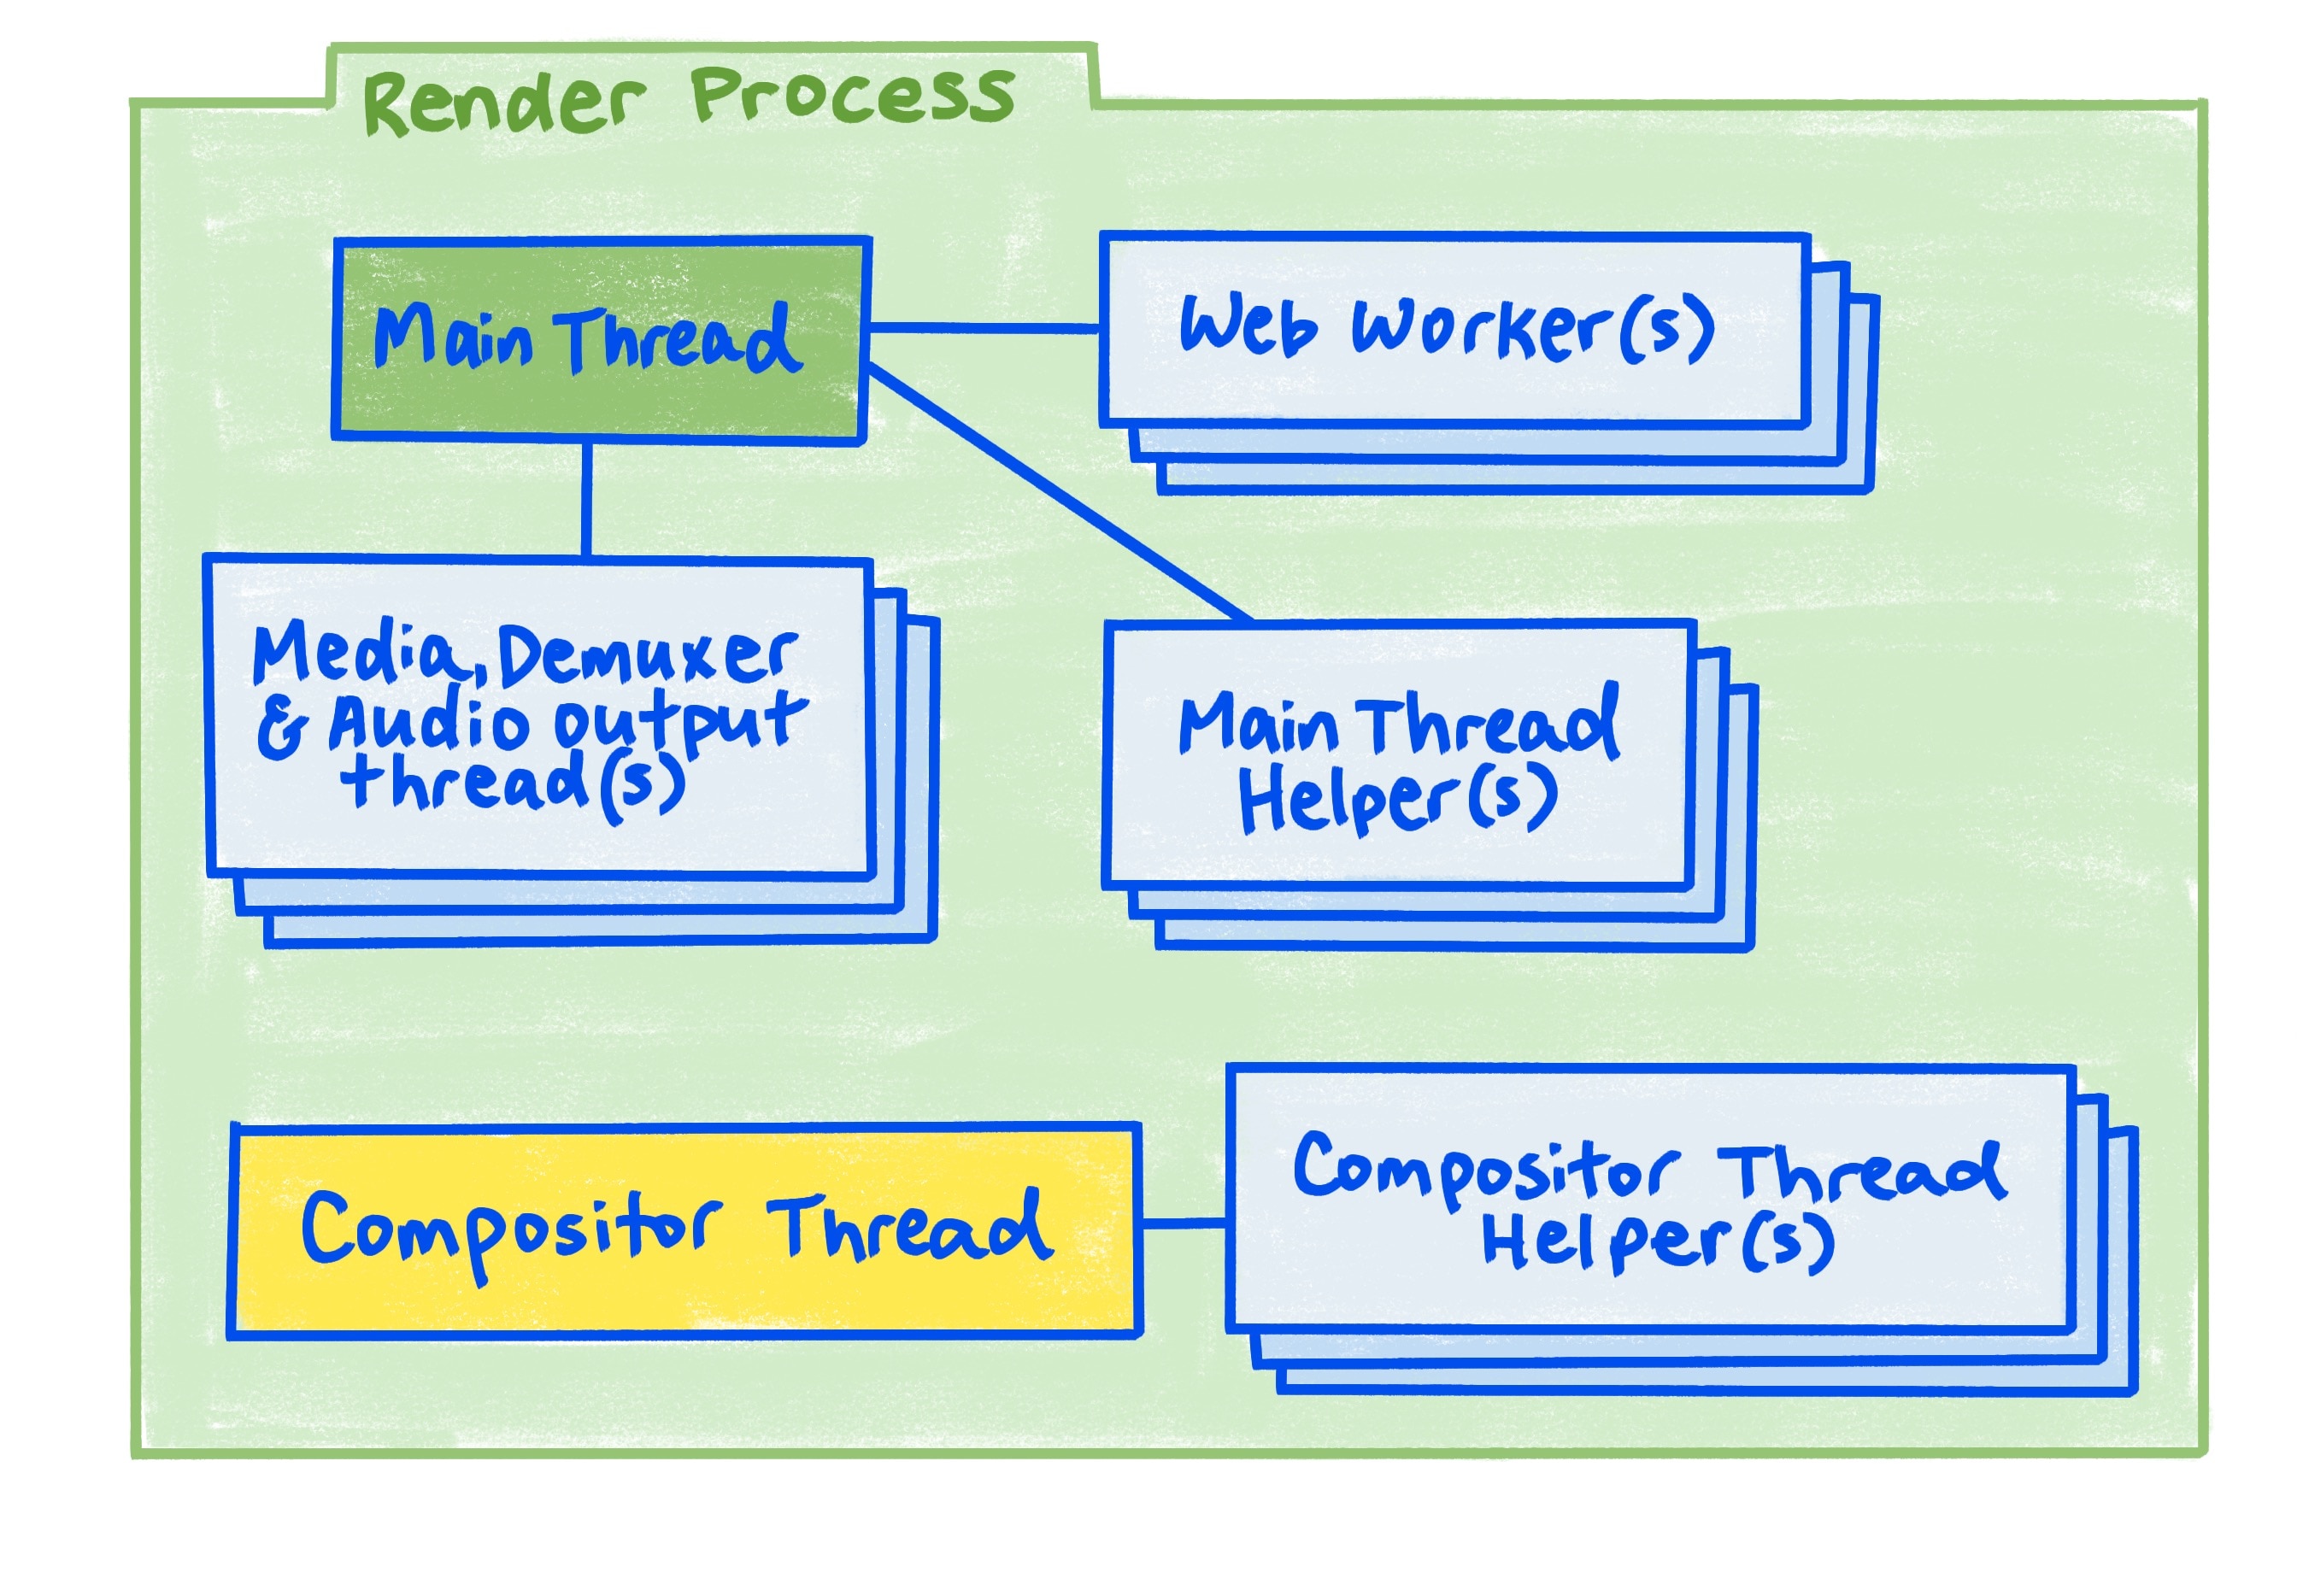 Схема процесса рендеринга, описанная в статье.